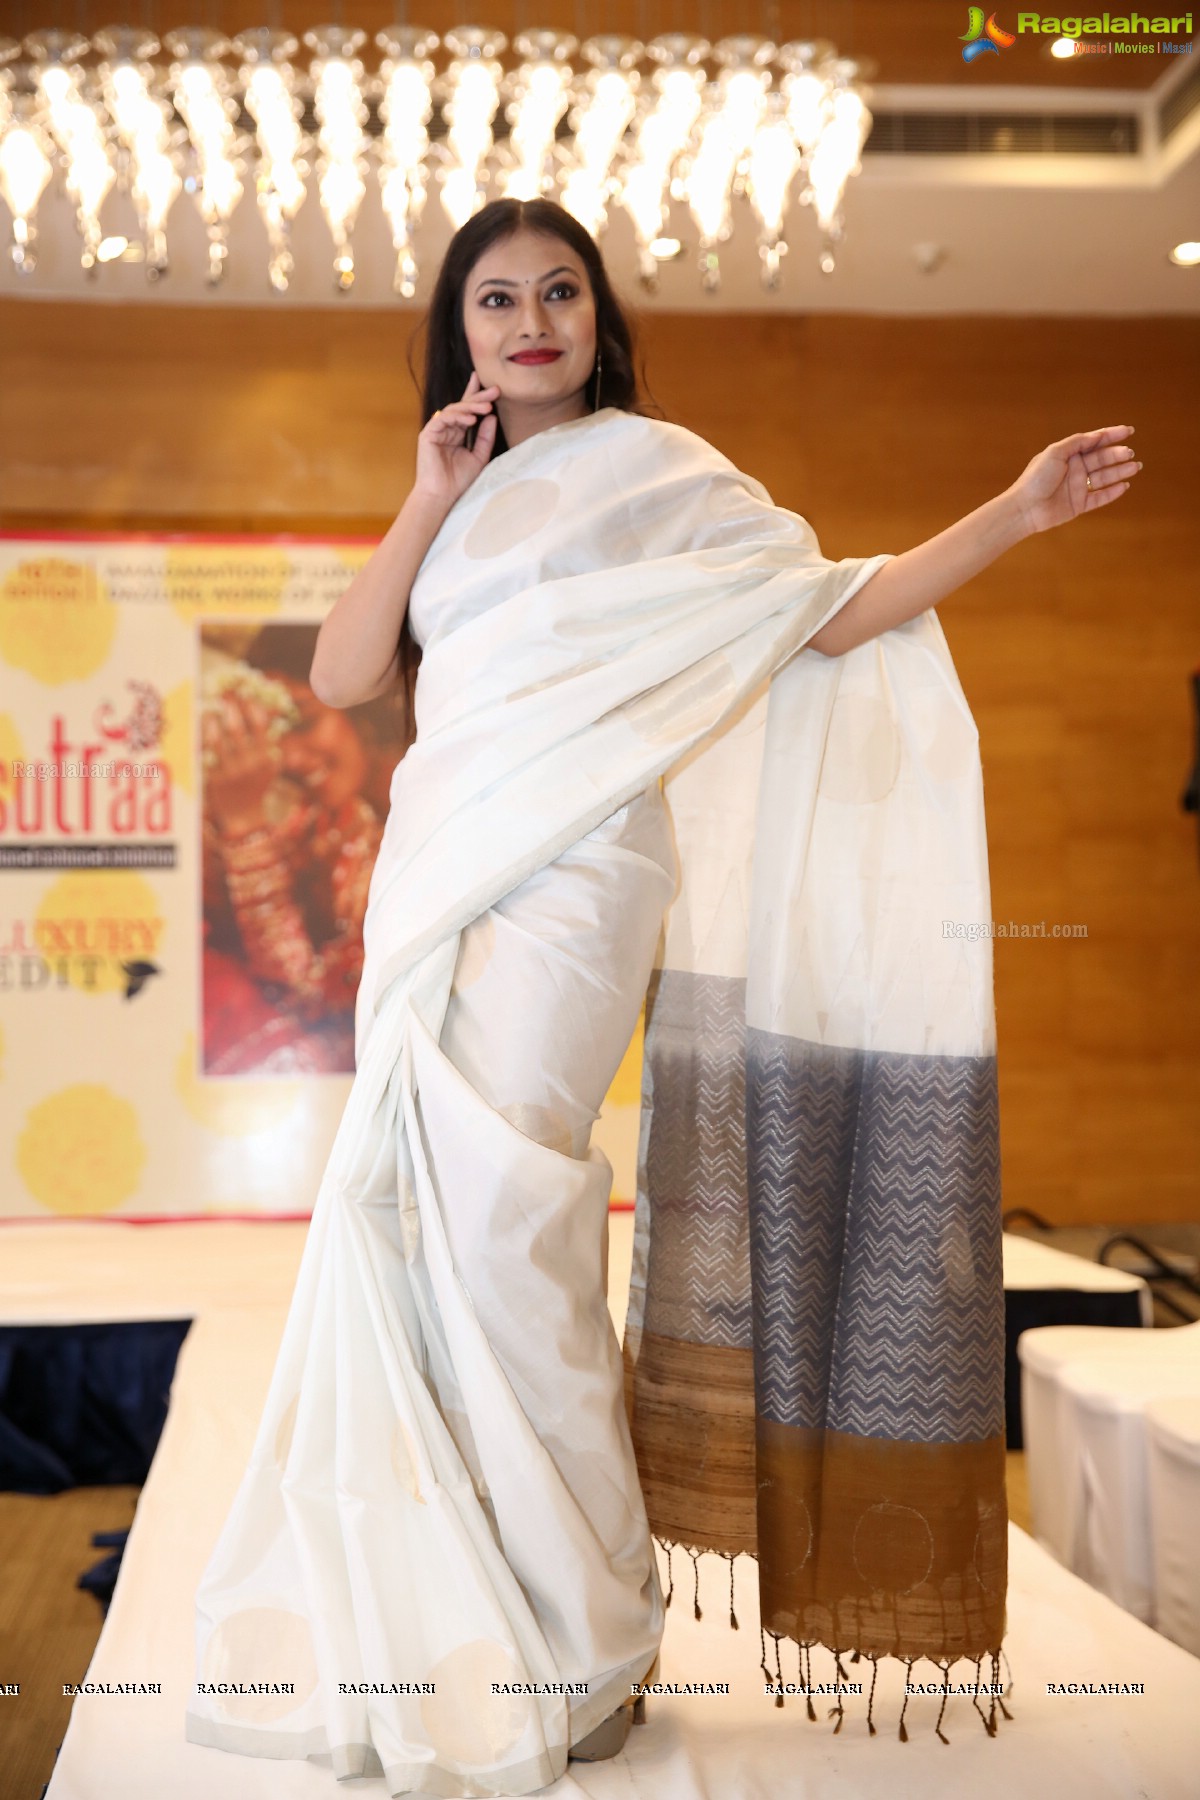 Sutraa Grand Curtain Raiser & Fashion Showcase at Hotel Marigold